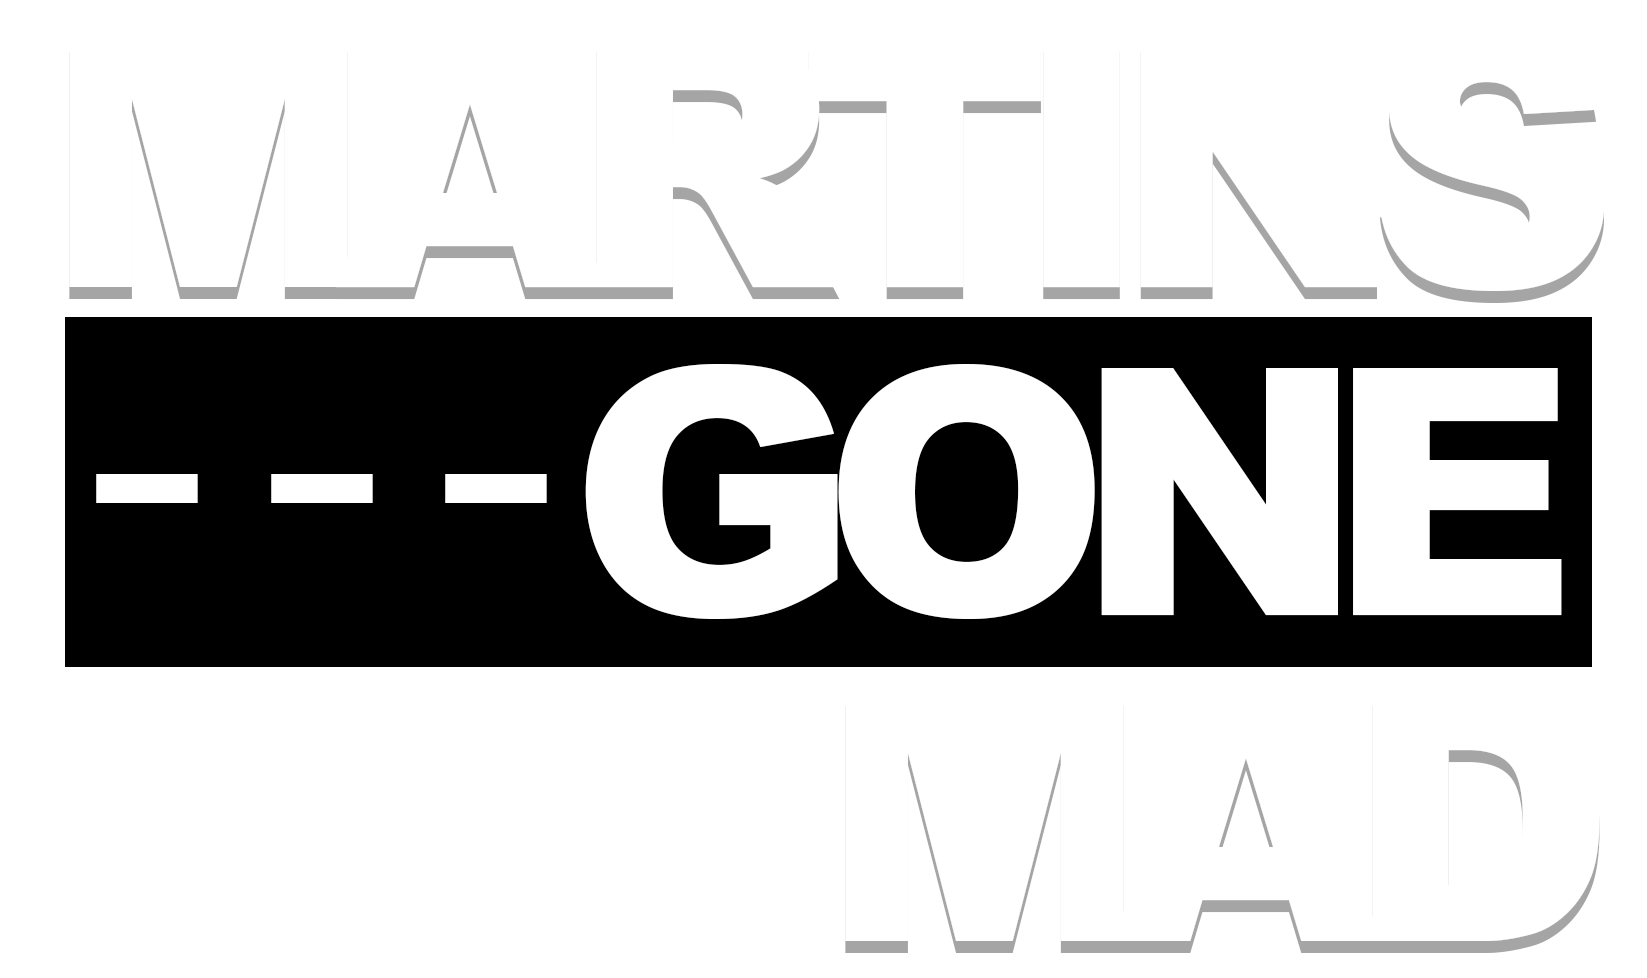 Martins Gone Mad